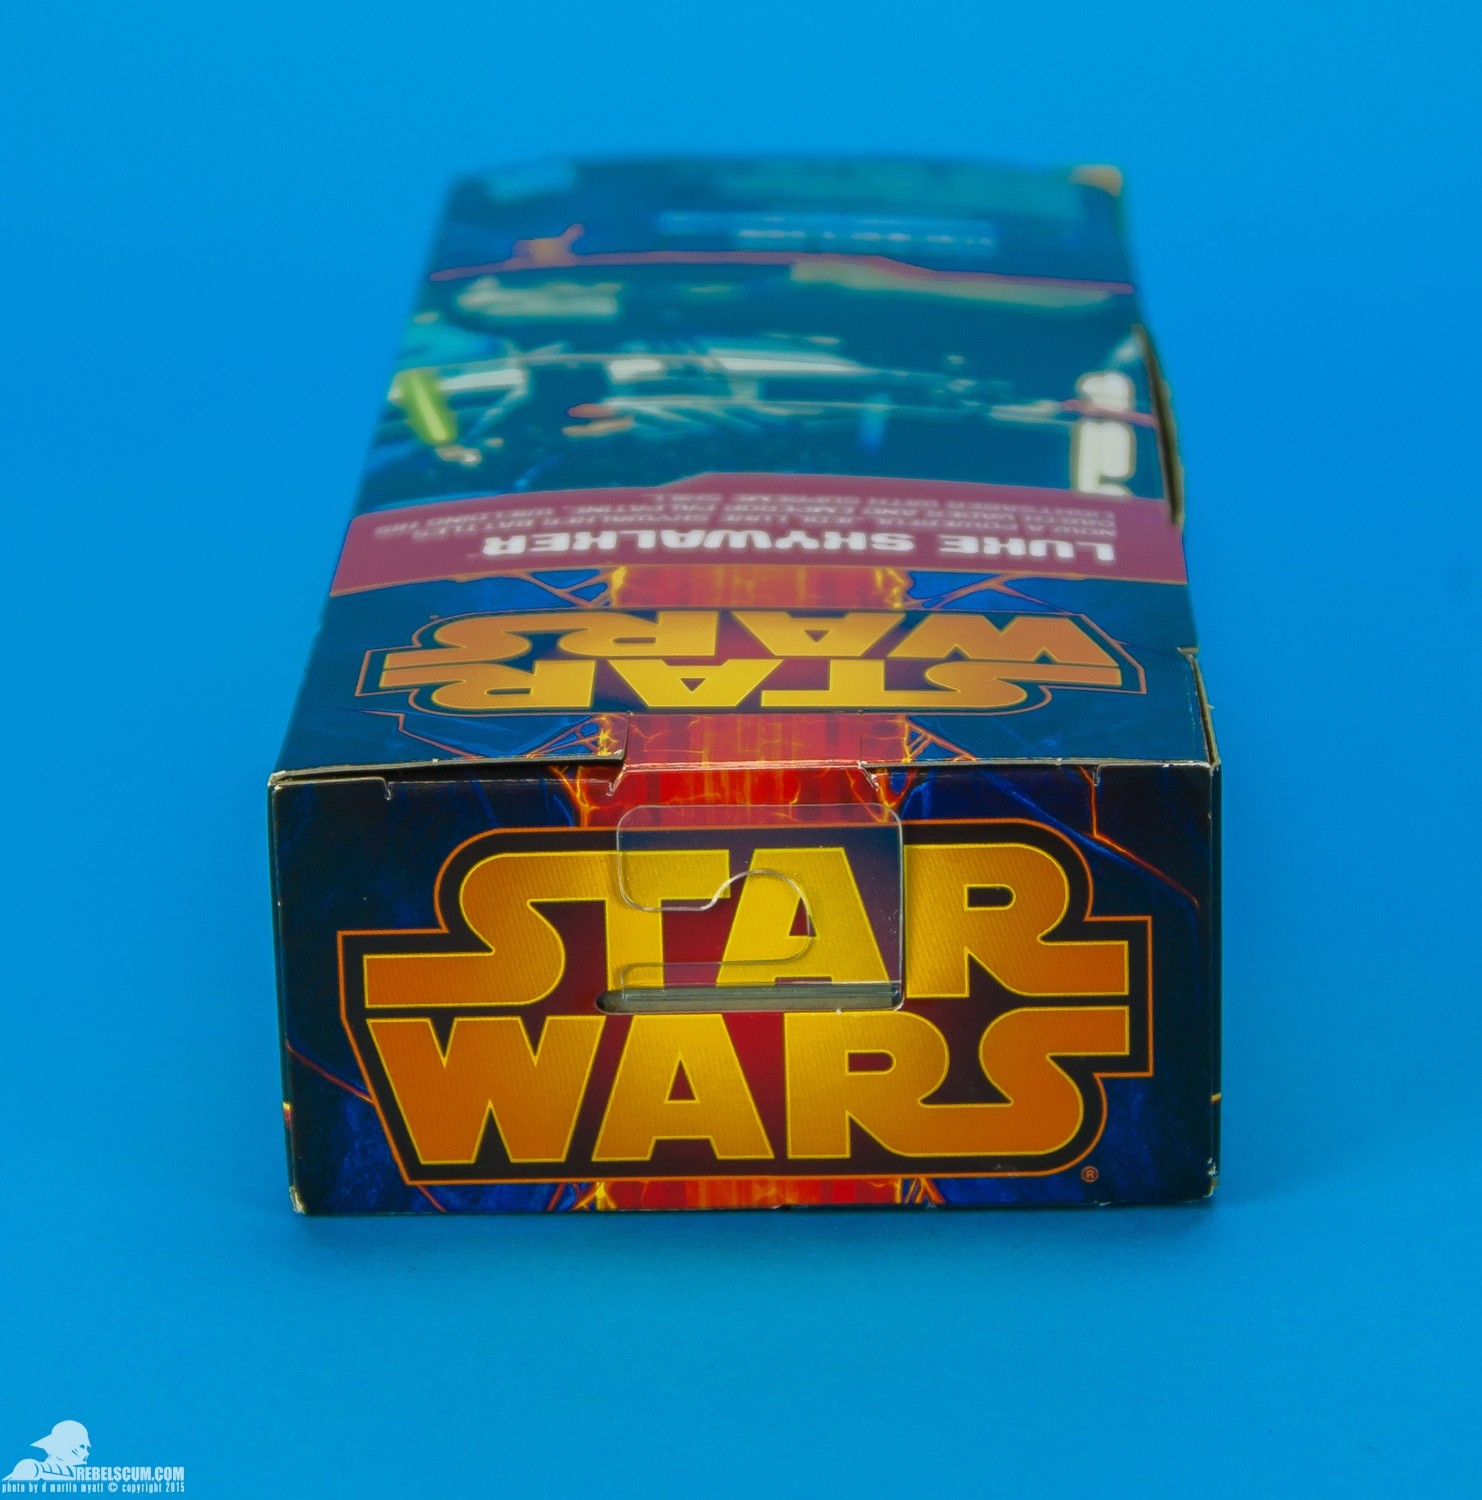 Luke-Skywalker-2014-Star-Wars-12-Inch-Figure-011.jpg